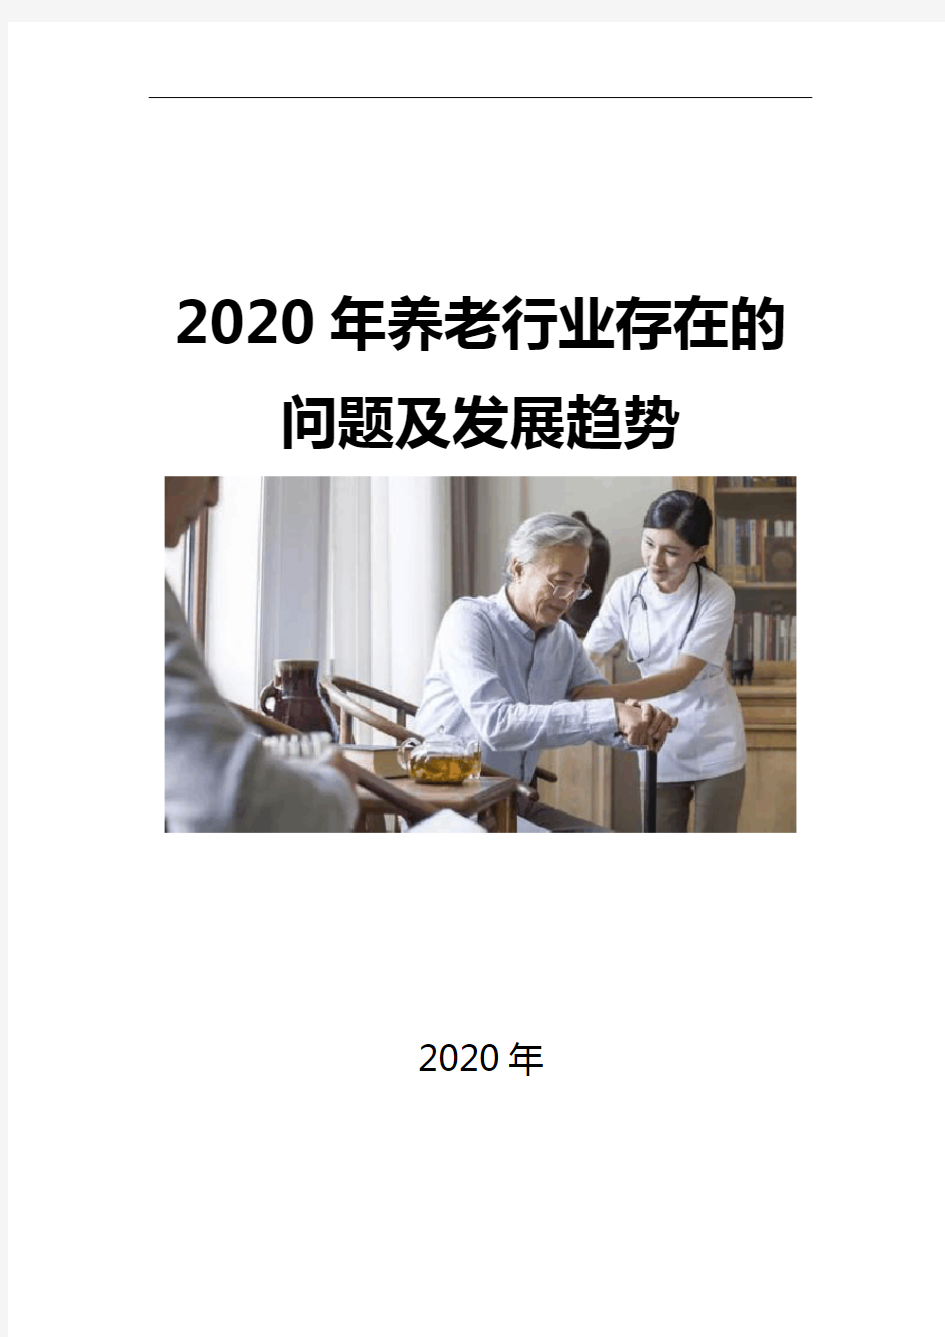 2020养老行业存在的问题及发展趋势